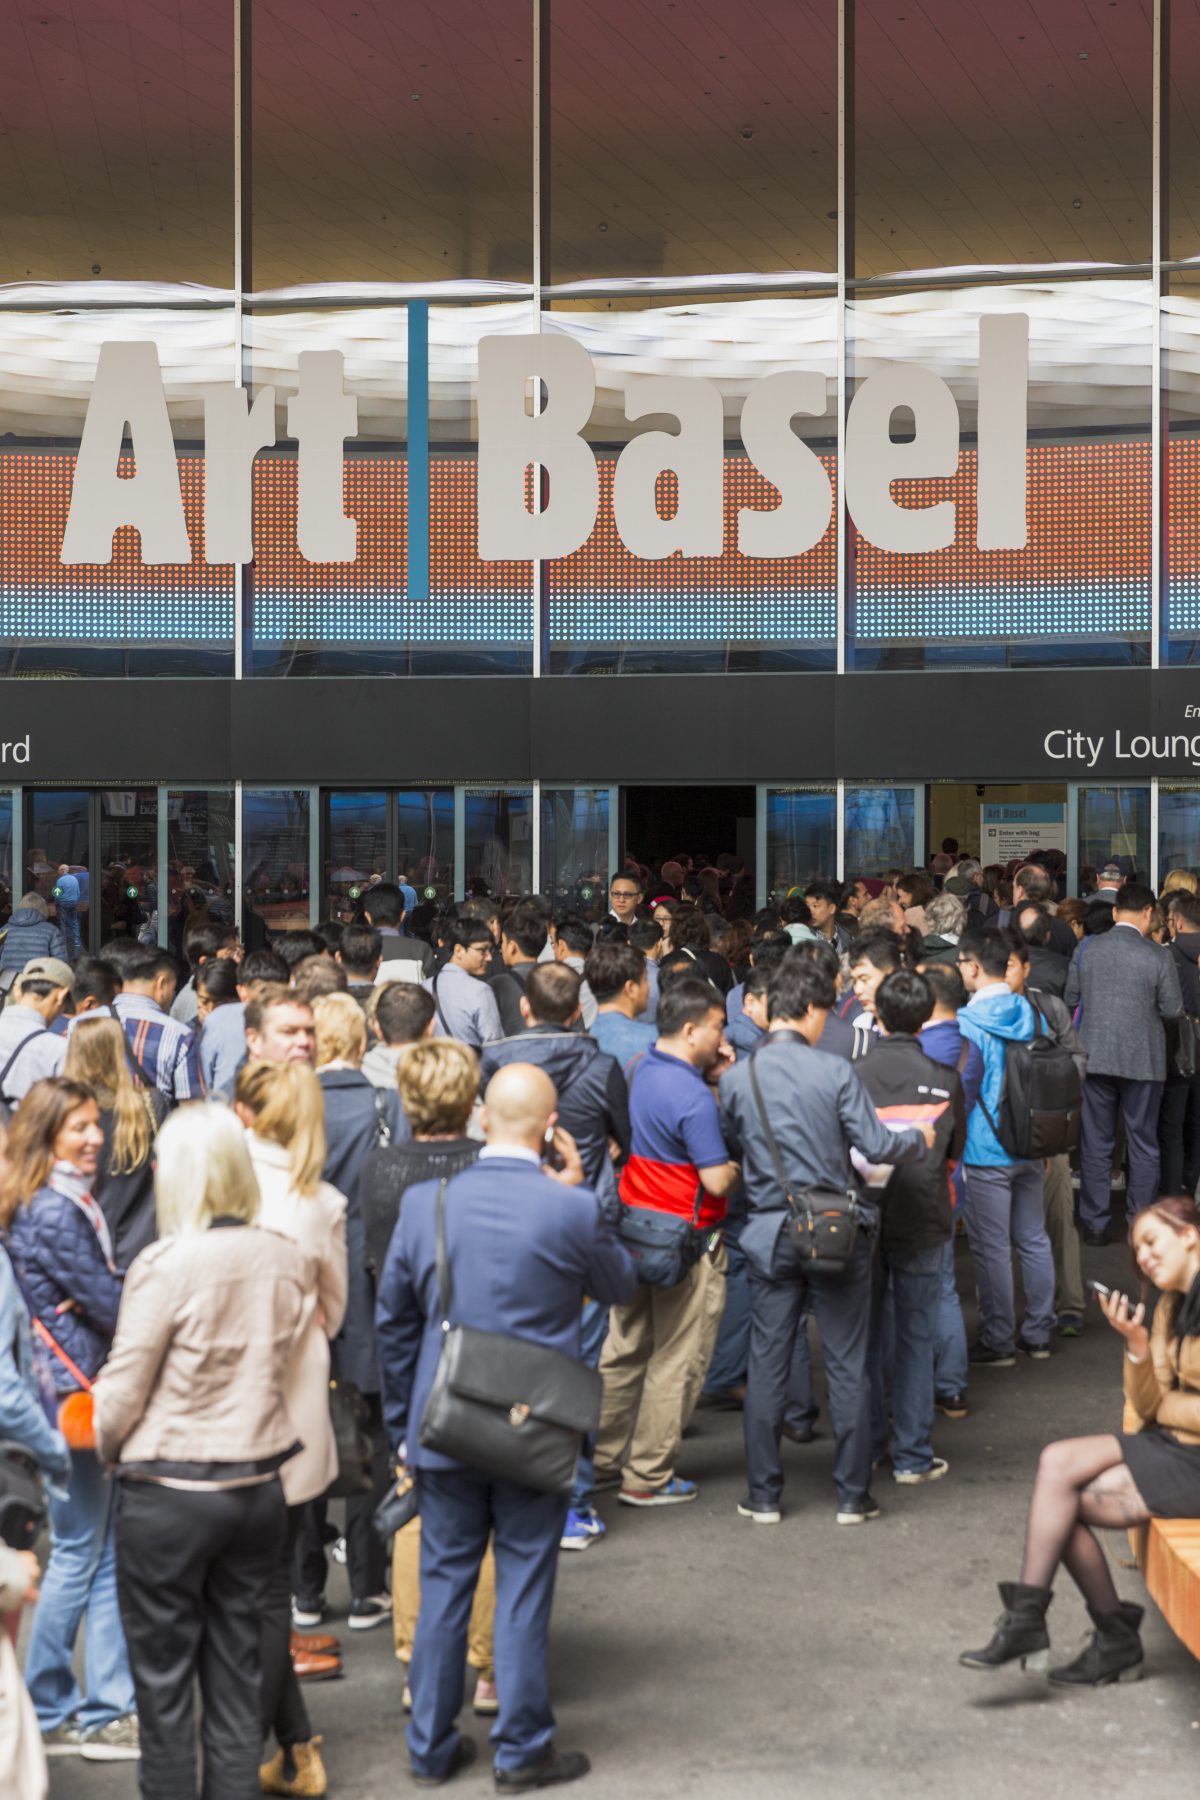 Art Basel 2016